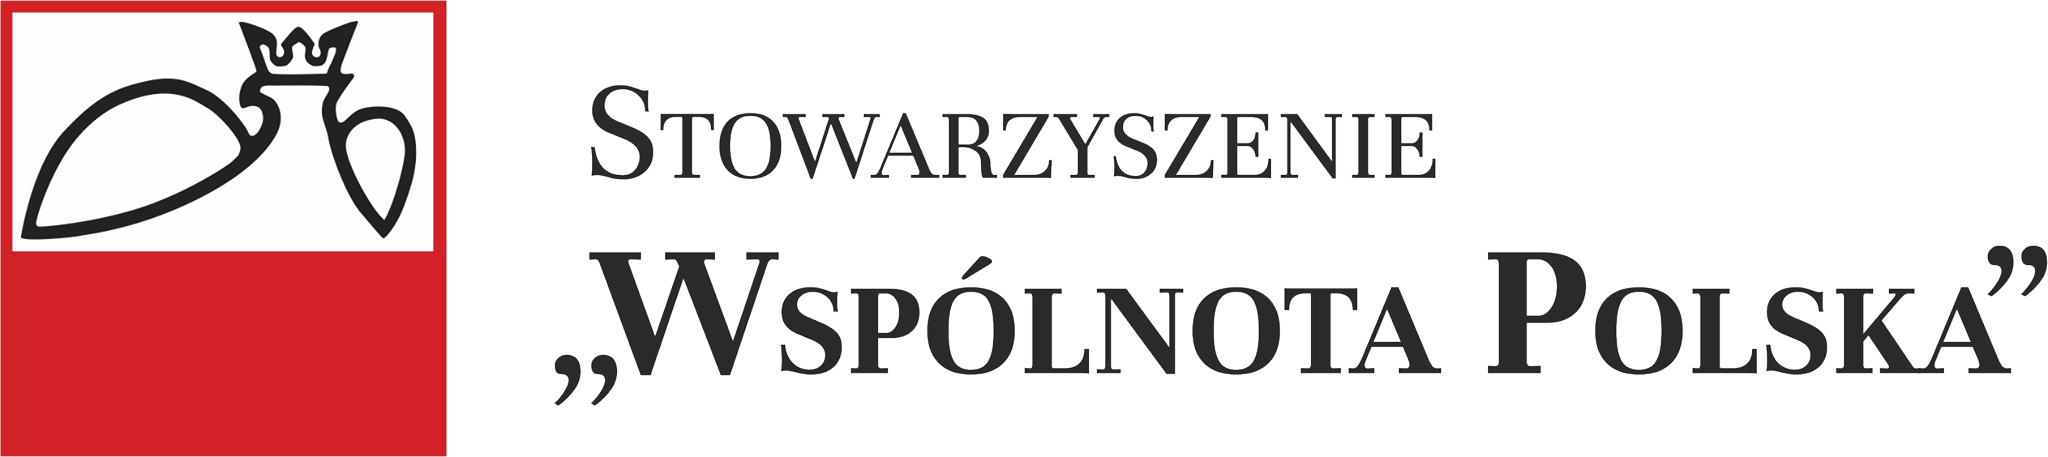 received_1025575834278168 - Stowarzyszenie "Wspólnota Polska"